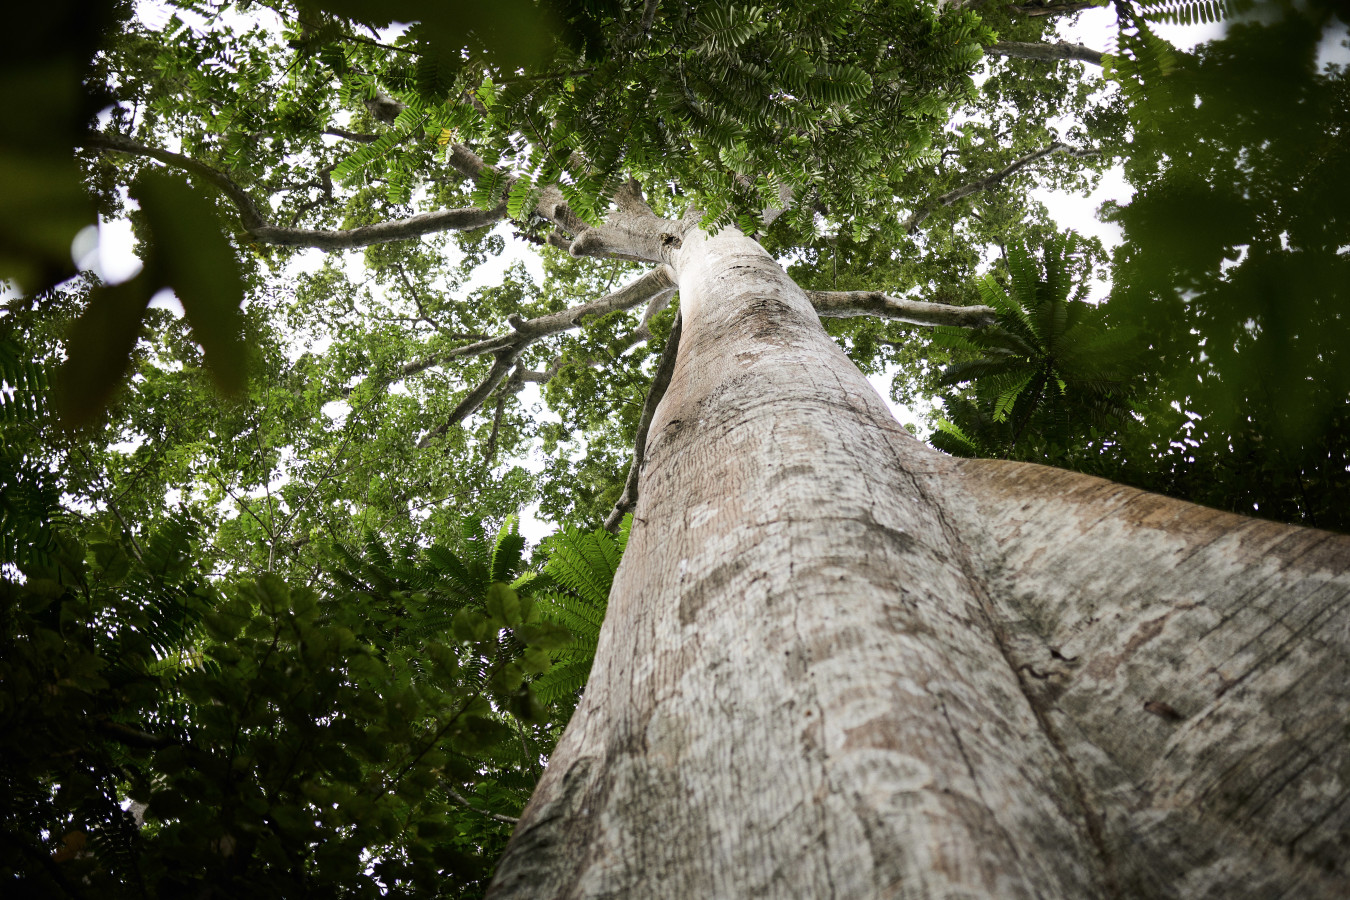 Bois et forêts : quels avantages pour l'investisseur ?